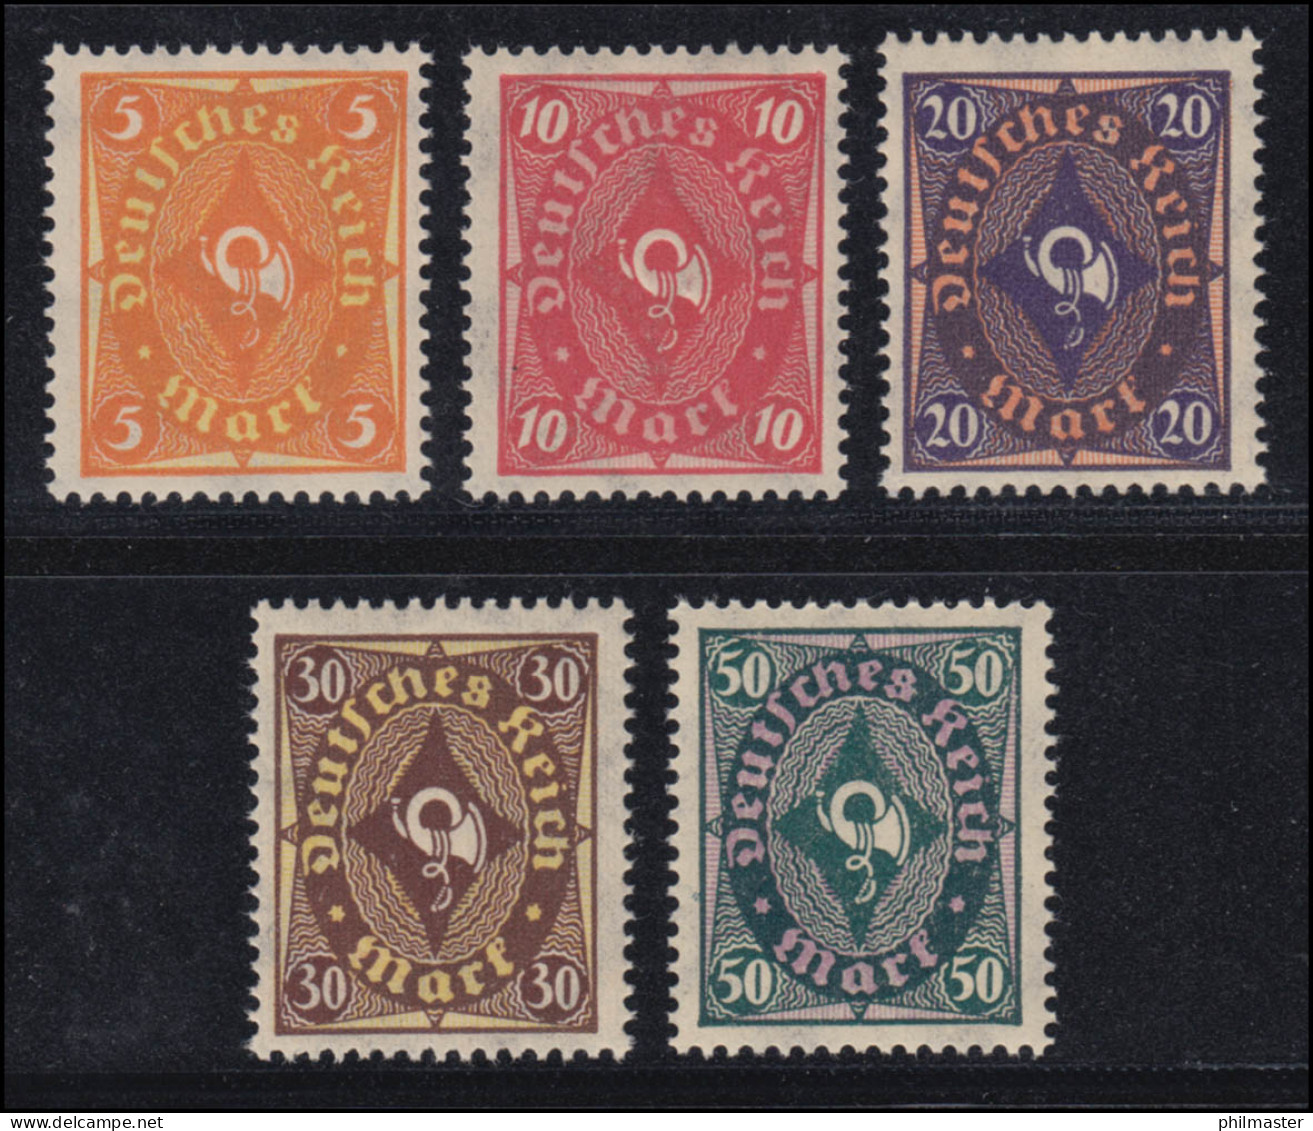 205-209 Posthorn Zweifarbig 1922, 5 Werte, Satz Komplett ** Postfrisch - Nuovi